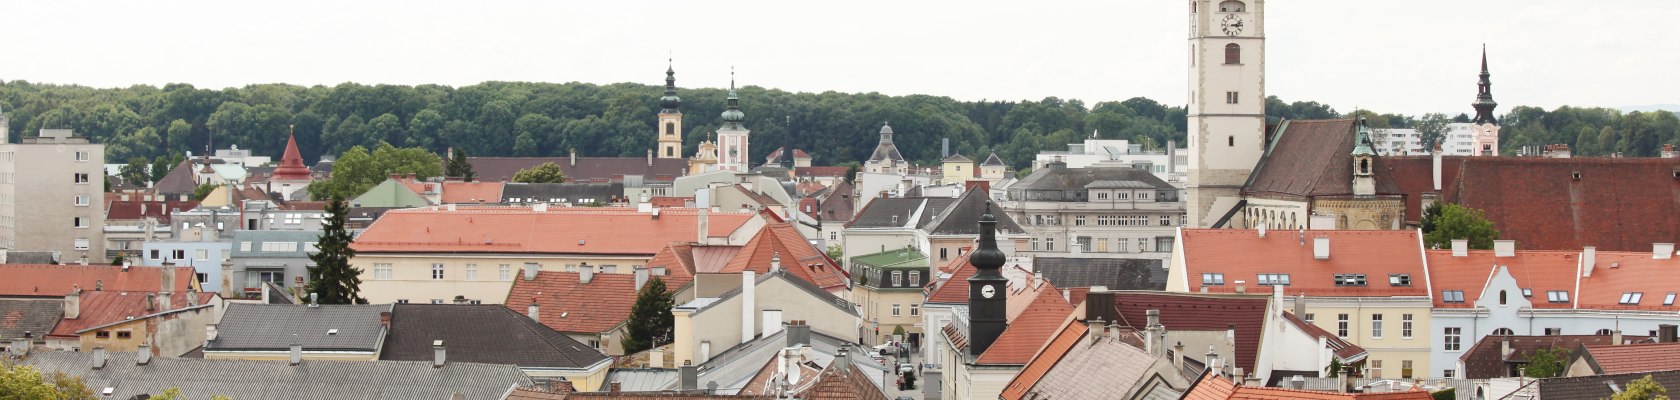 Blick über die Innenstadt St. Pöltens